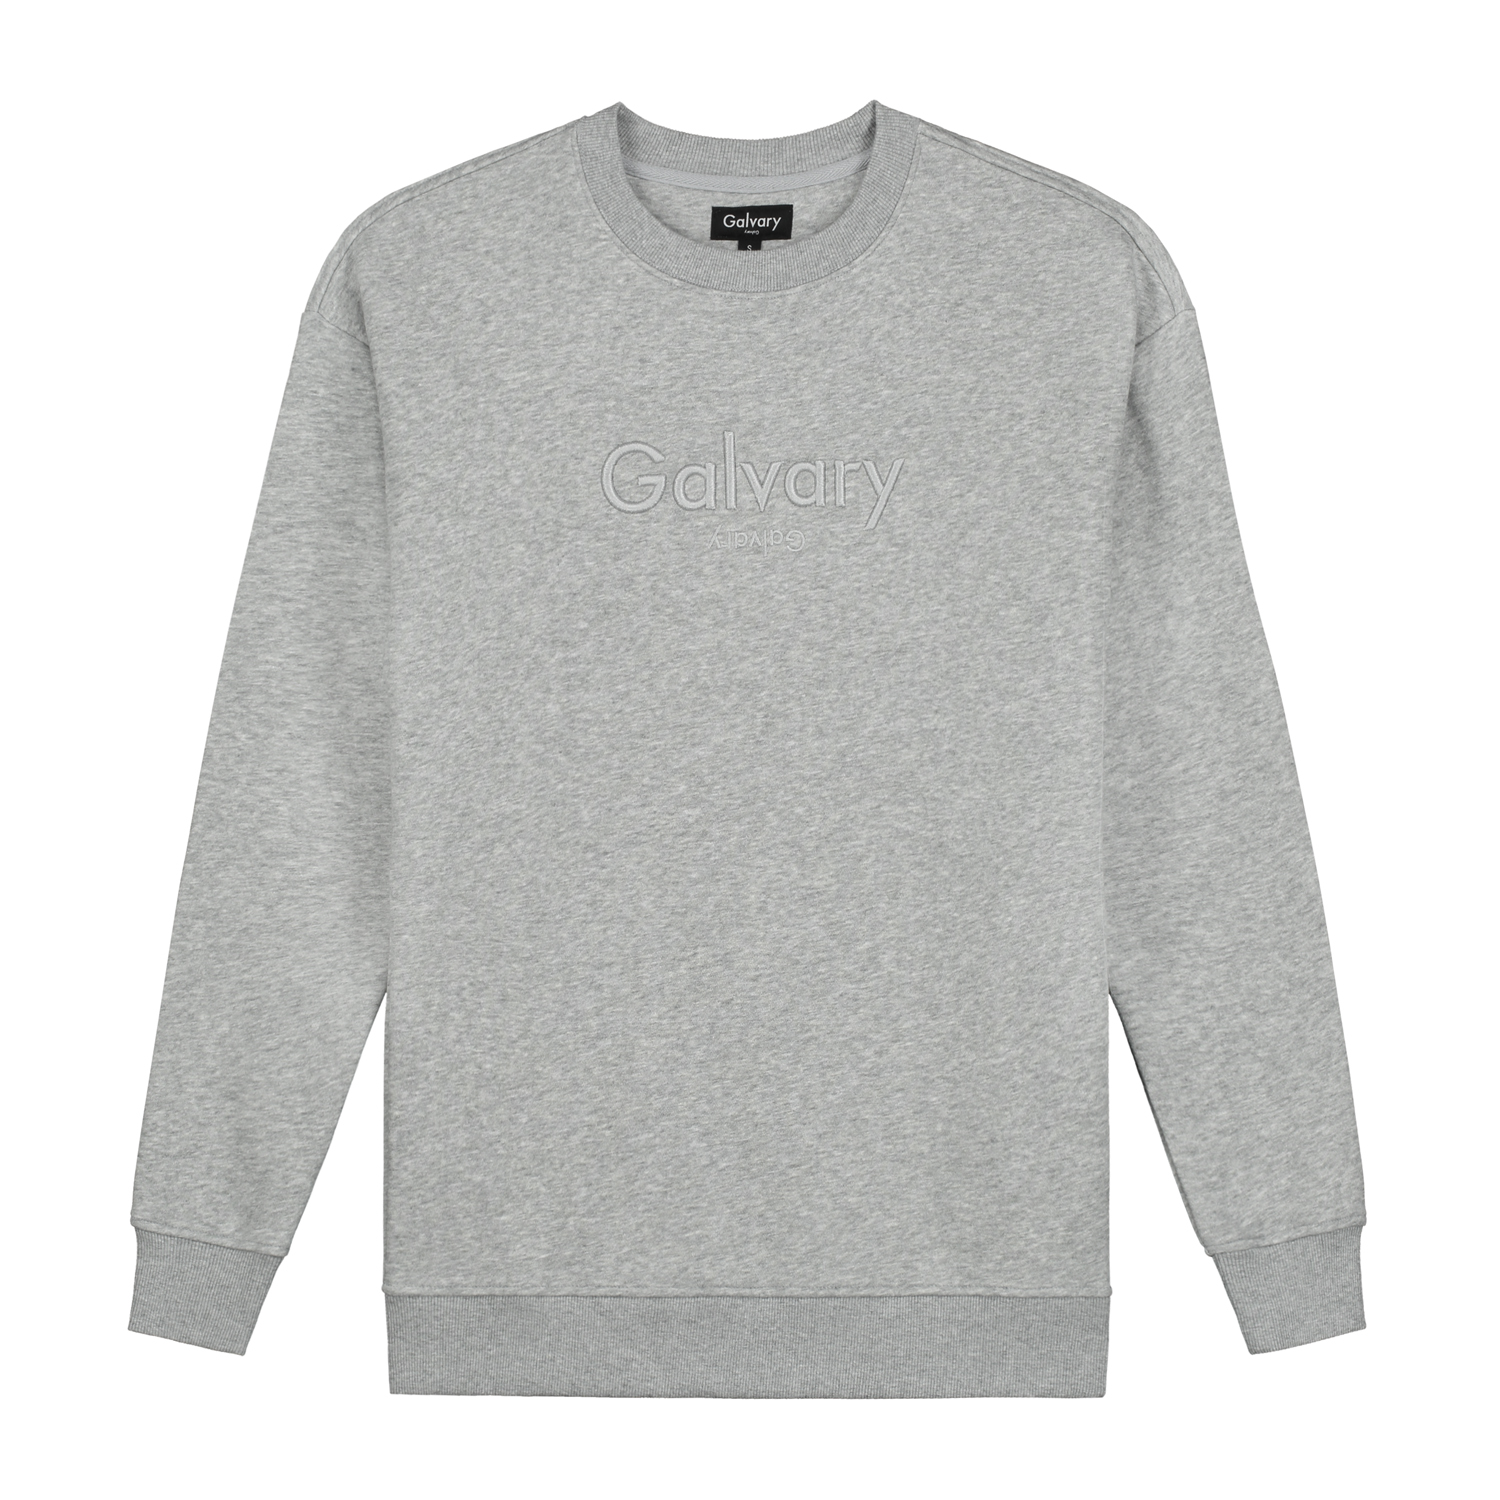 Grey Sweater – G Λ L V Λ R Y l Official Website